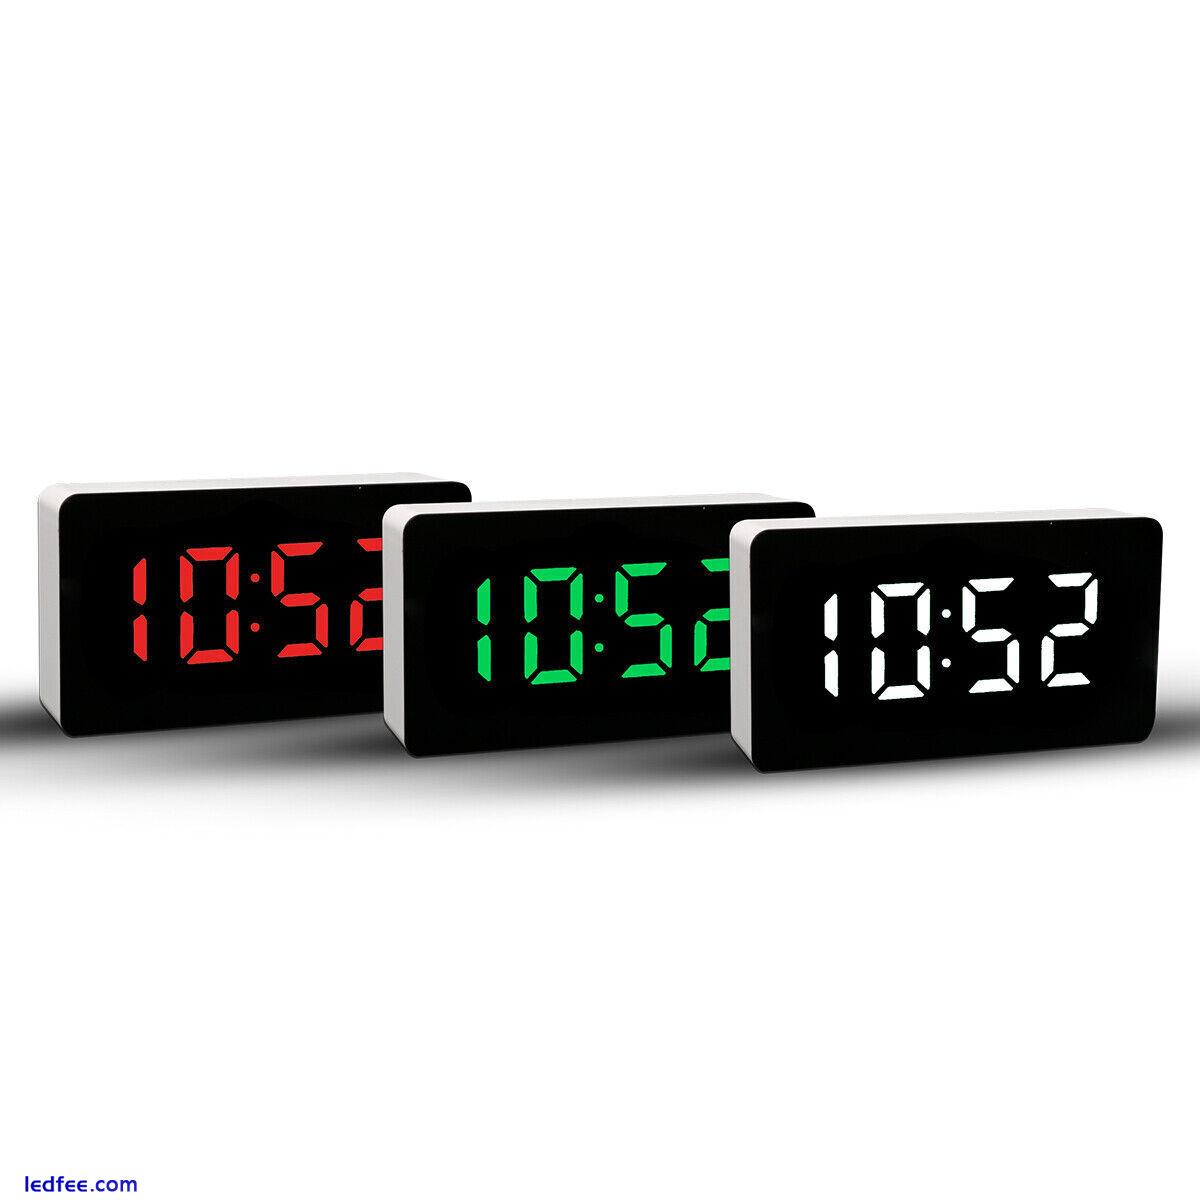 LED Electric Digital Alarm Clock Mains Battery Mirror Temperature Display UK 0 